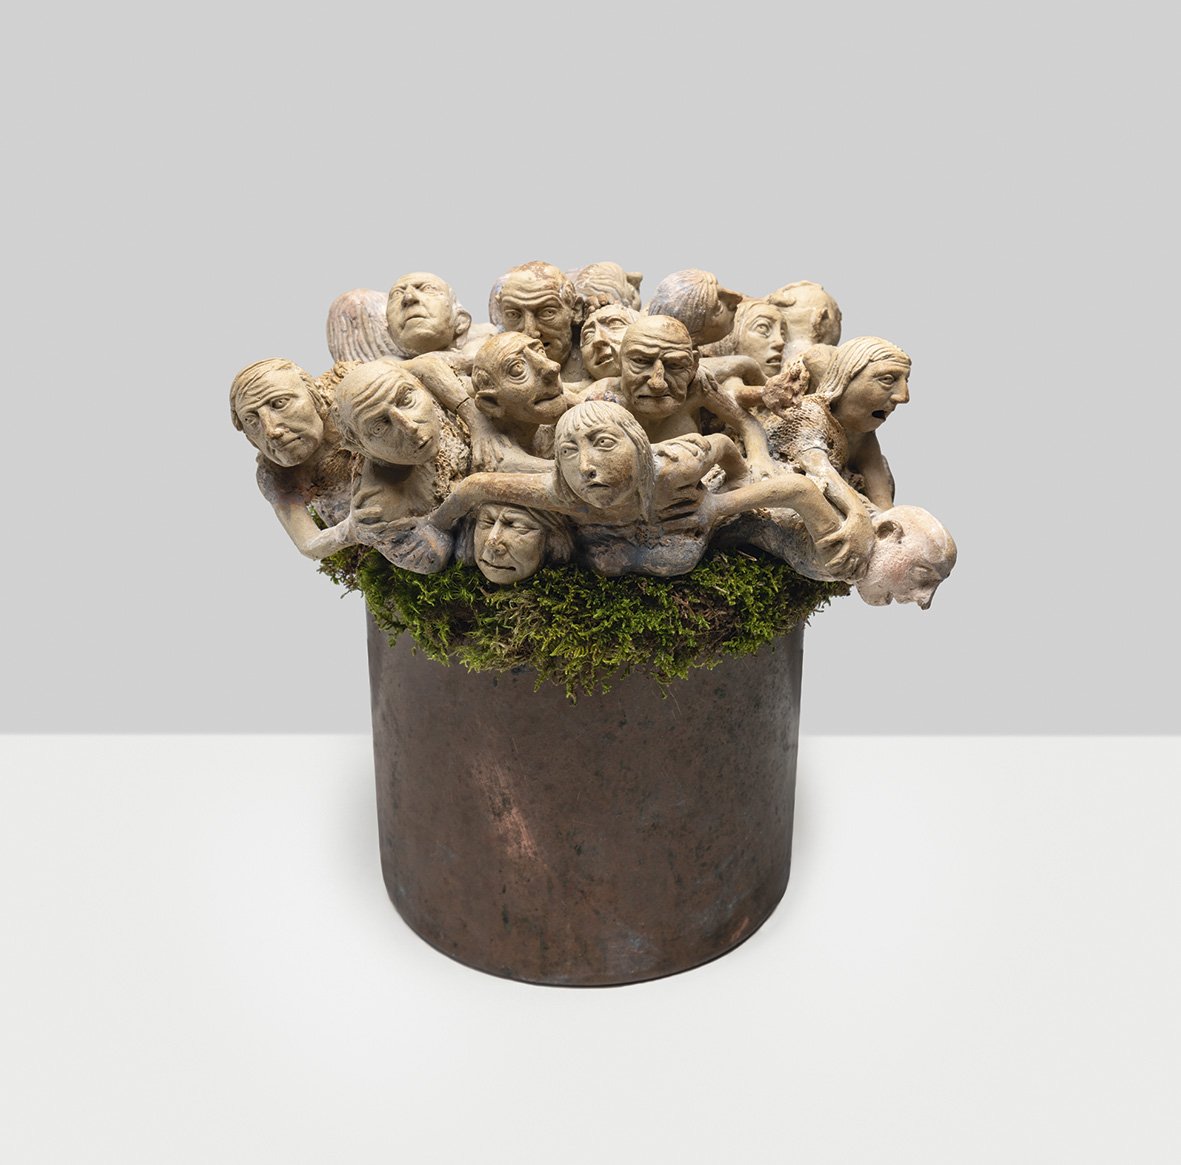 Magasat „ugró” szobrászművész kiállítása nyílik Sepsiszentgyörgyön